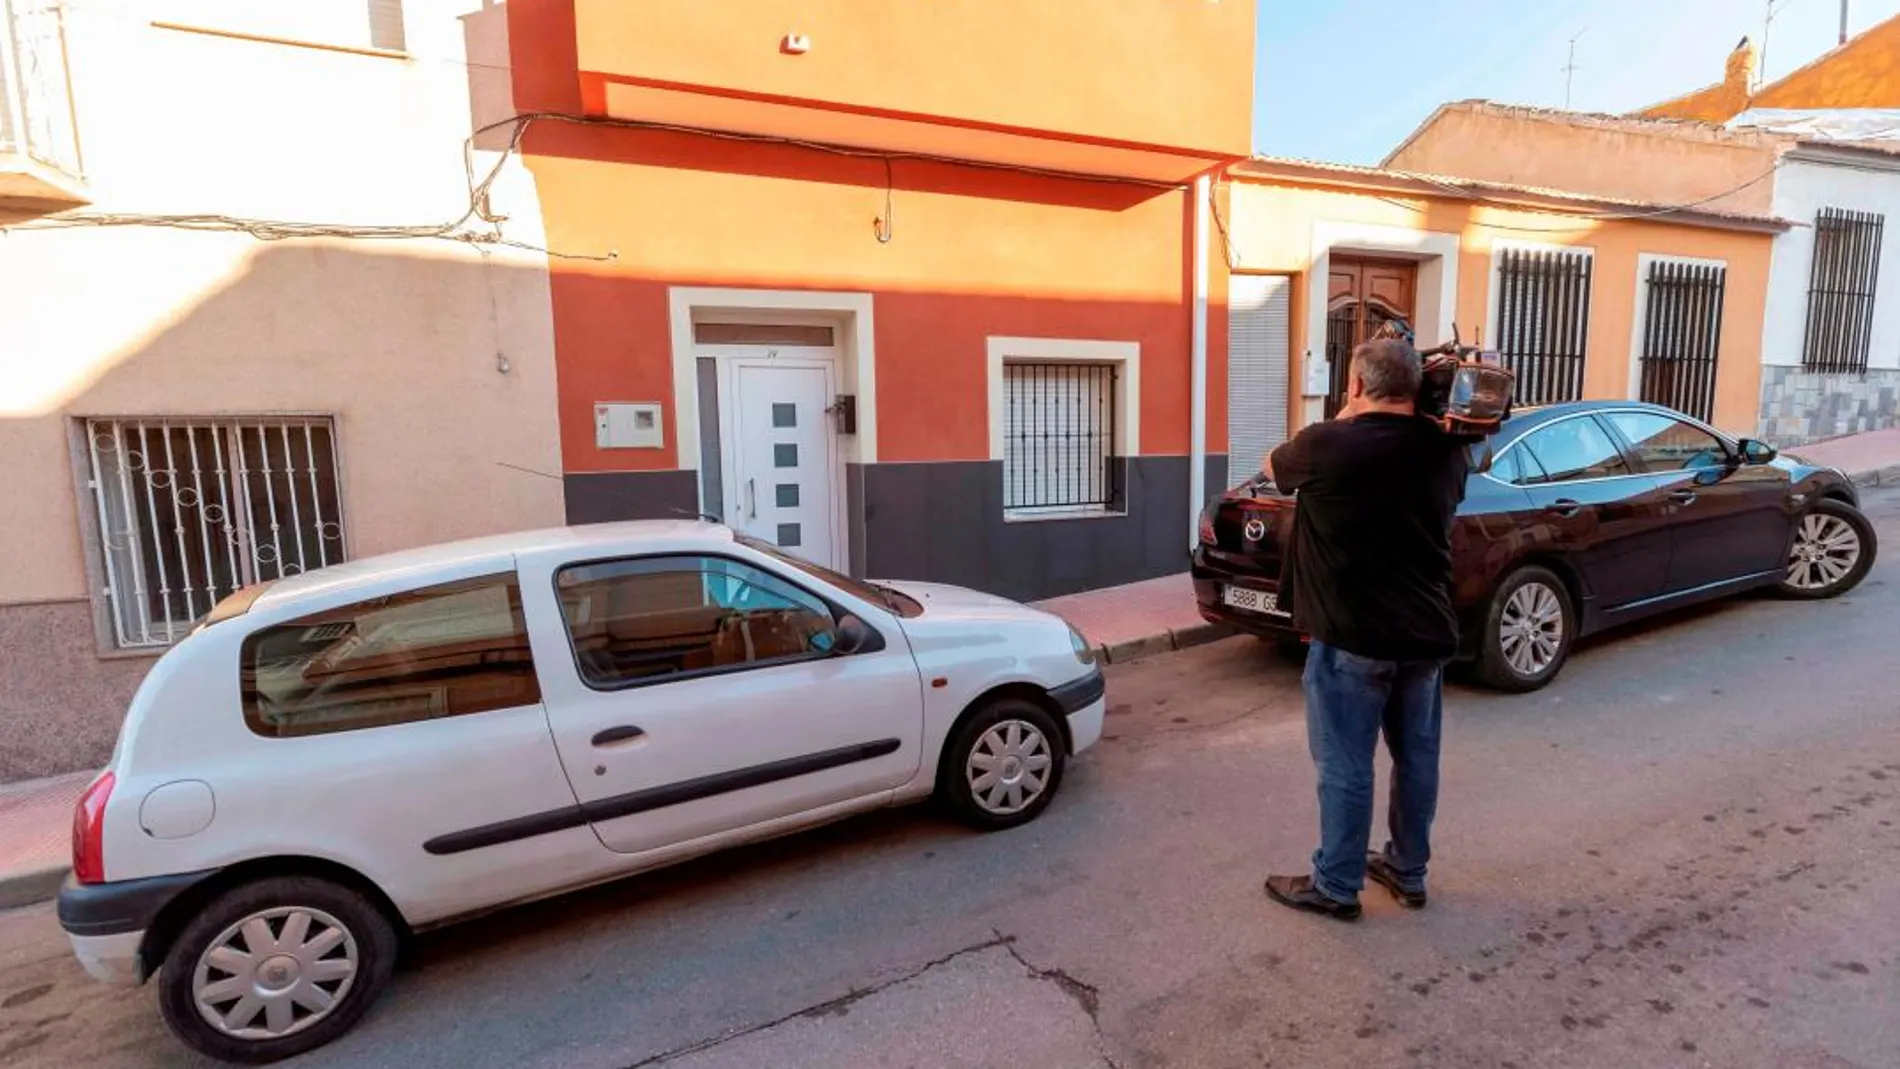 Vivienda número 39 de la Calle Saavedra Fajardo de Molina de Segura donde un hombre agredió a su esposa / Efe